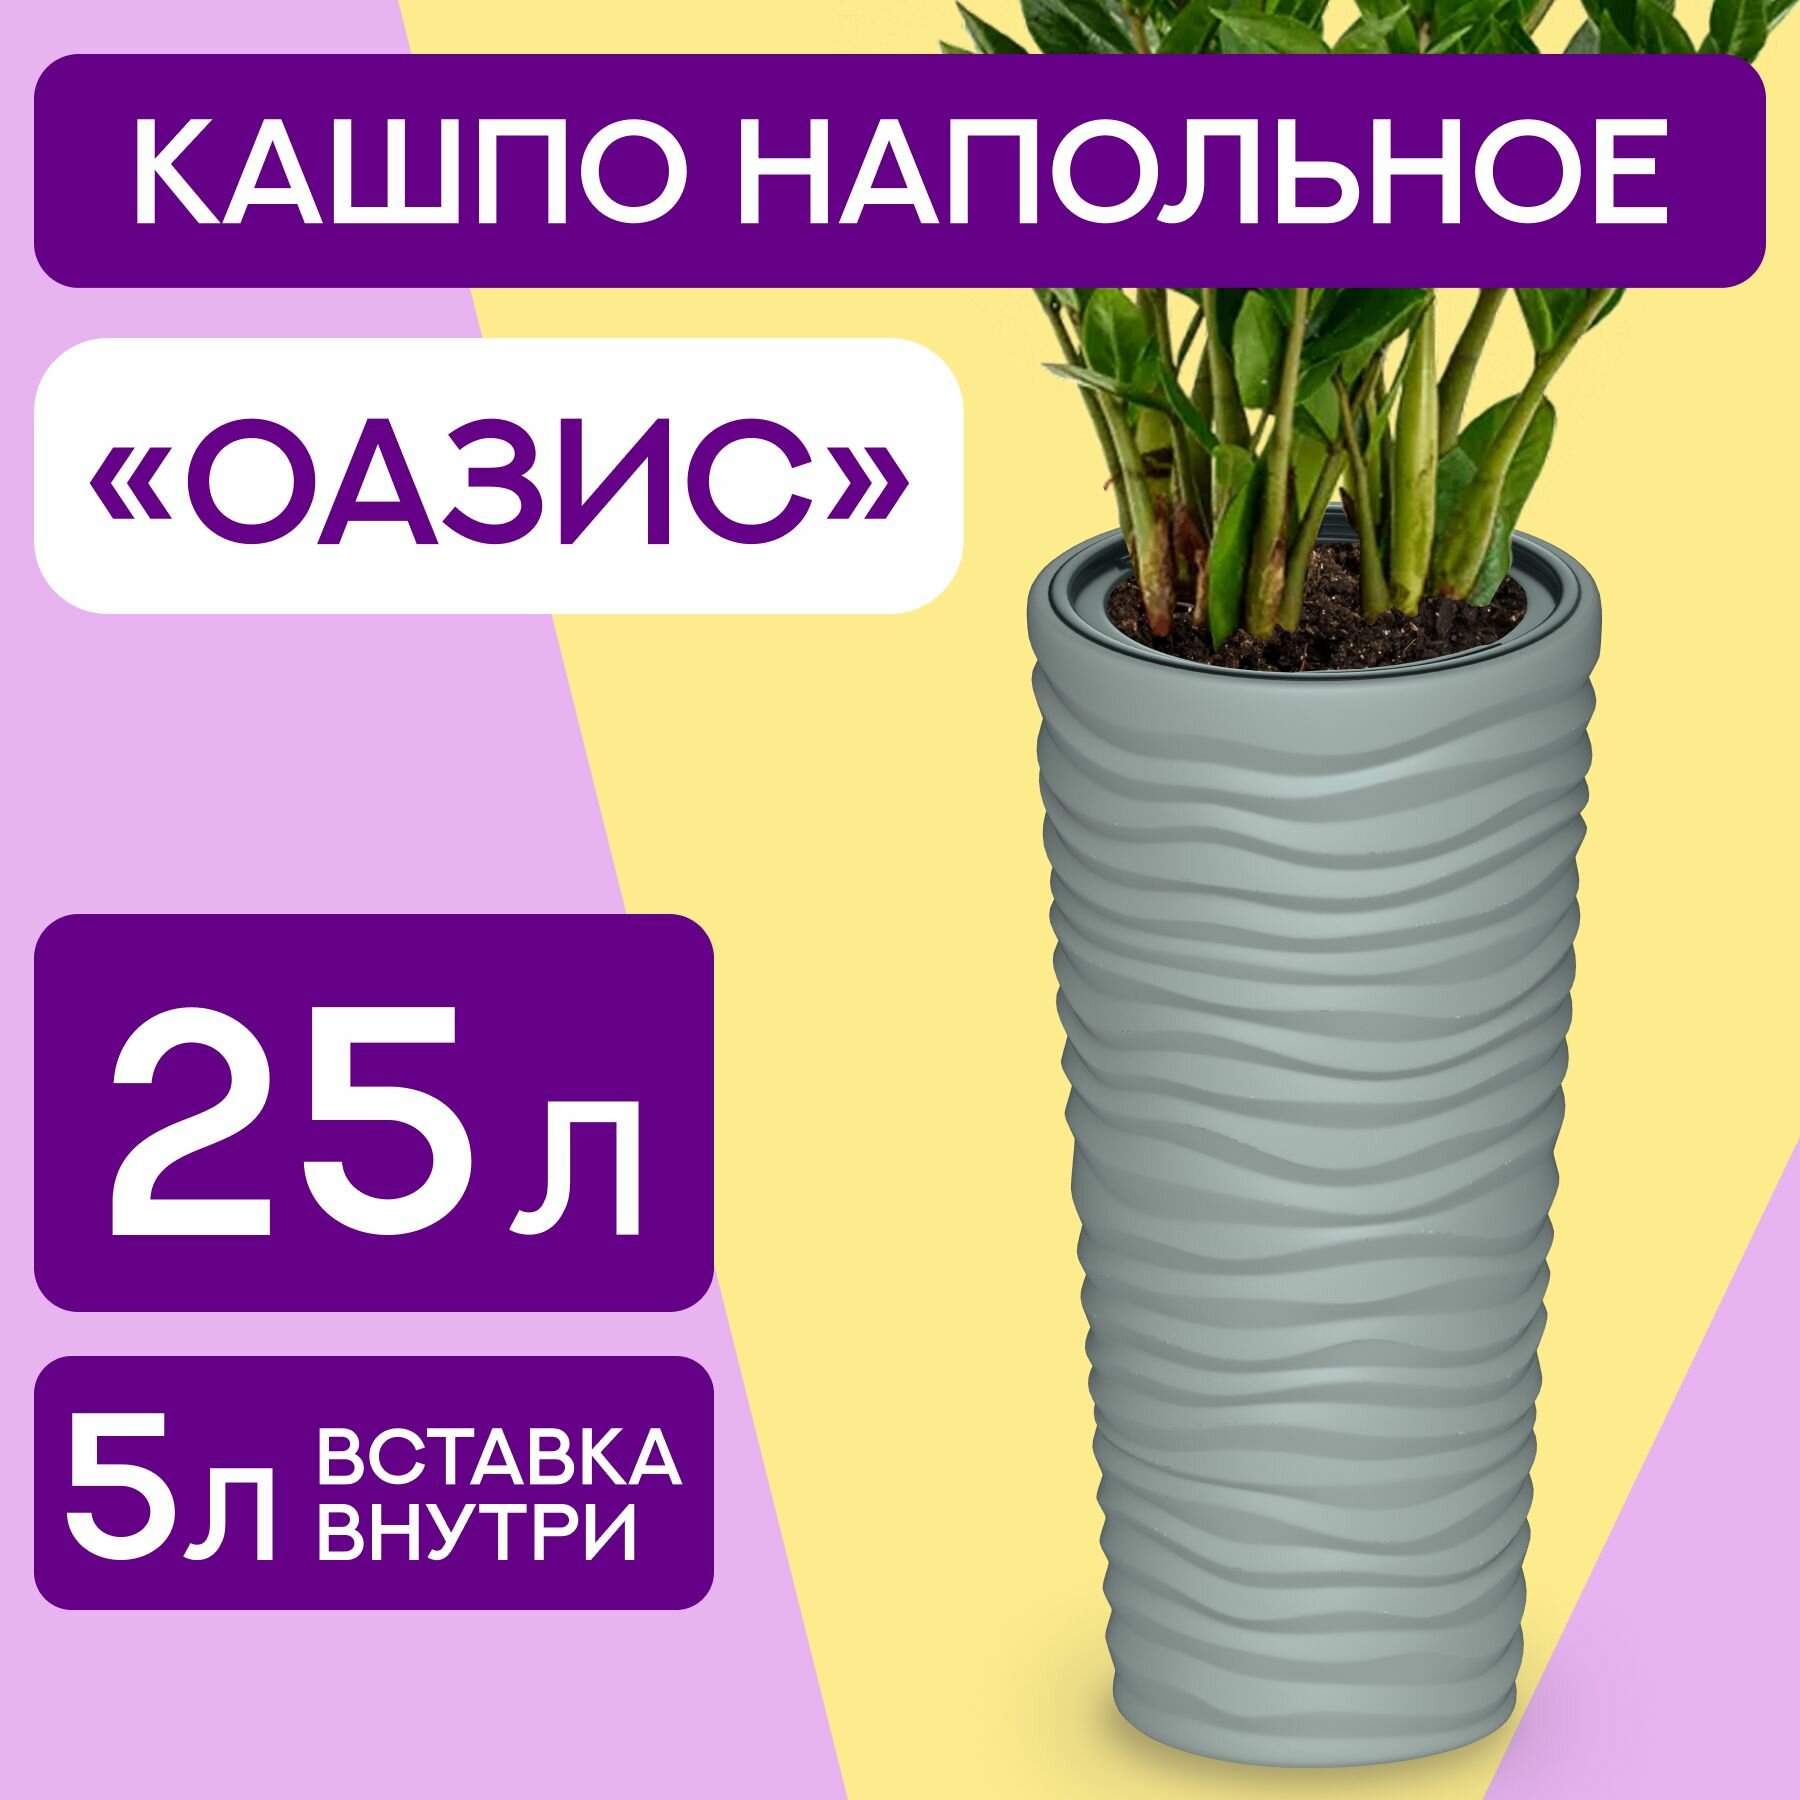 Горшок Оазис для растений/ кашпо со вставкой для цветов 25.0 Л